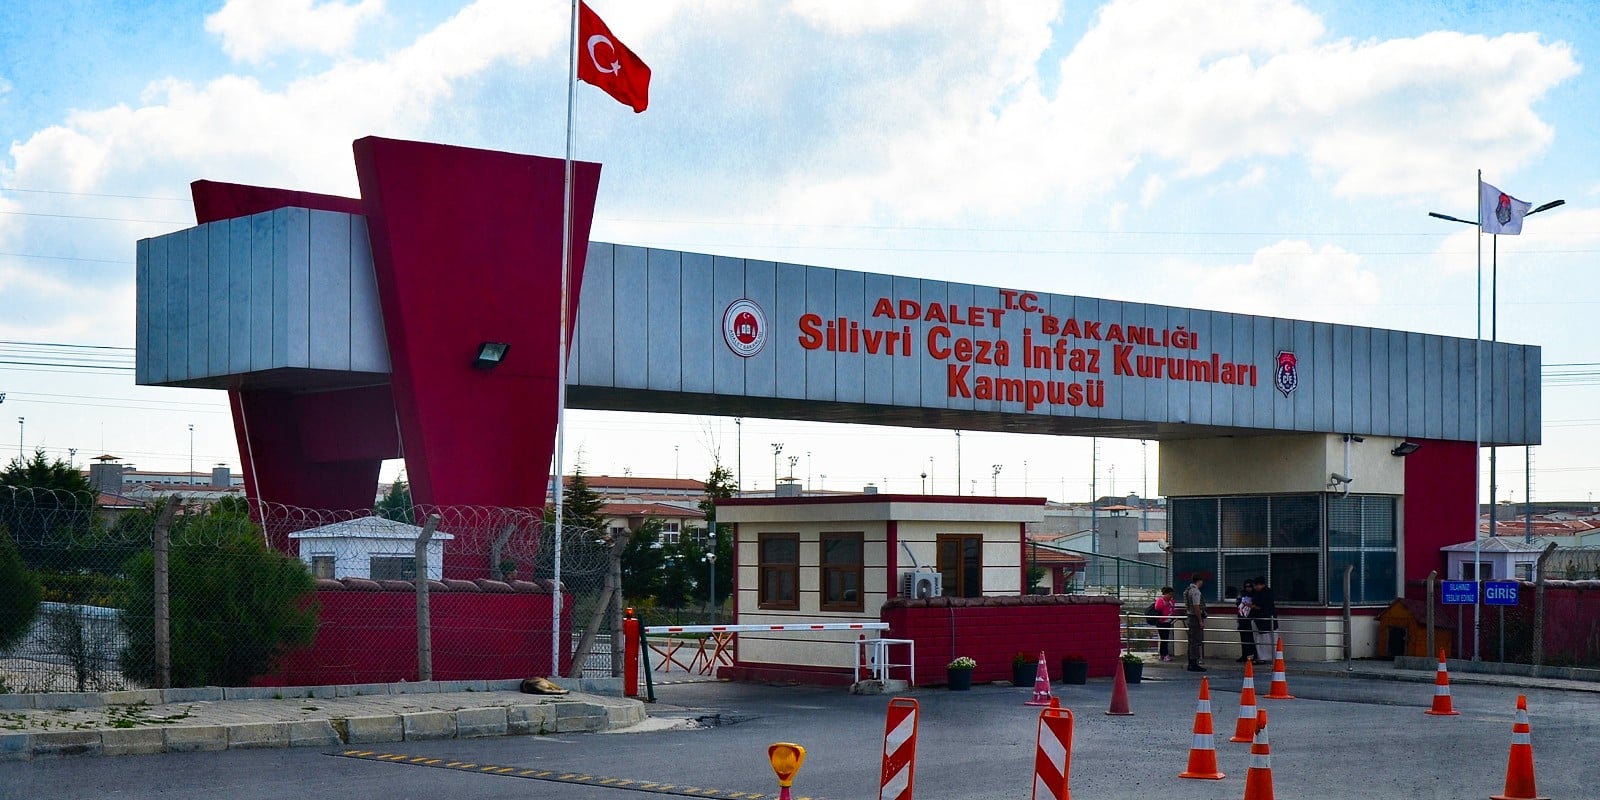 Silivri Prison in Silivri, Istanbul Turkey